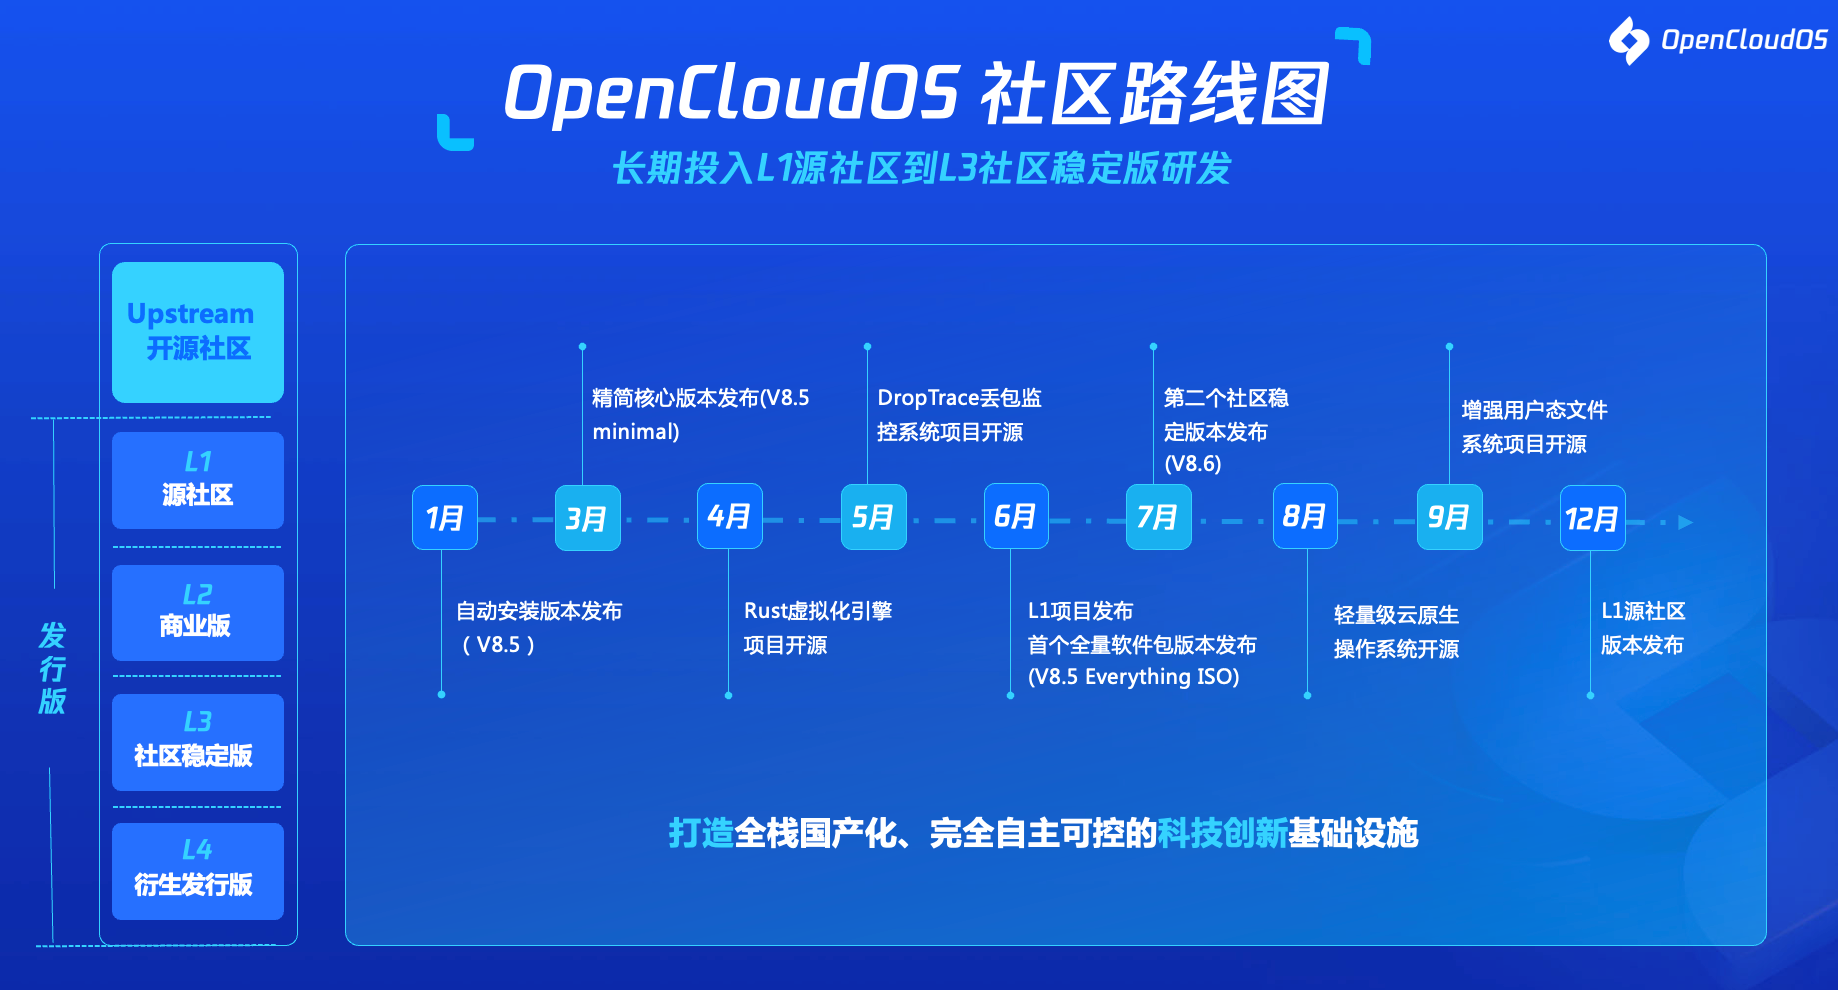 全面自主可控！首个全链路国产化操作系统OpenCloudOS发布源社区项目